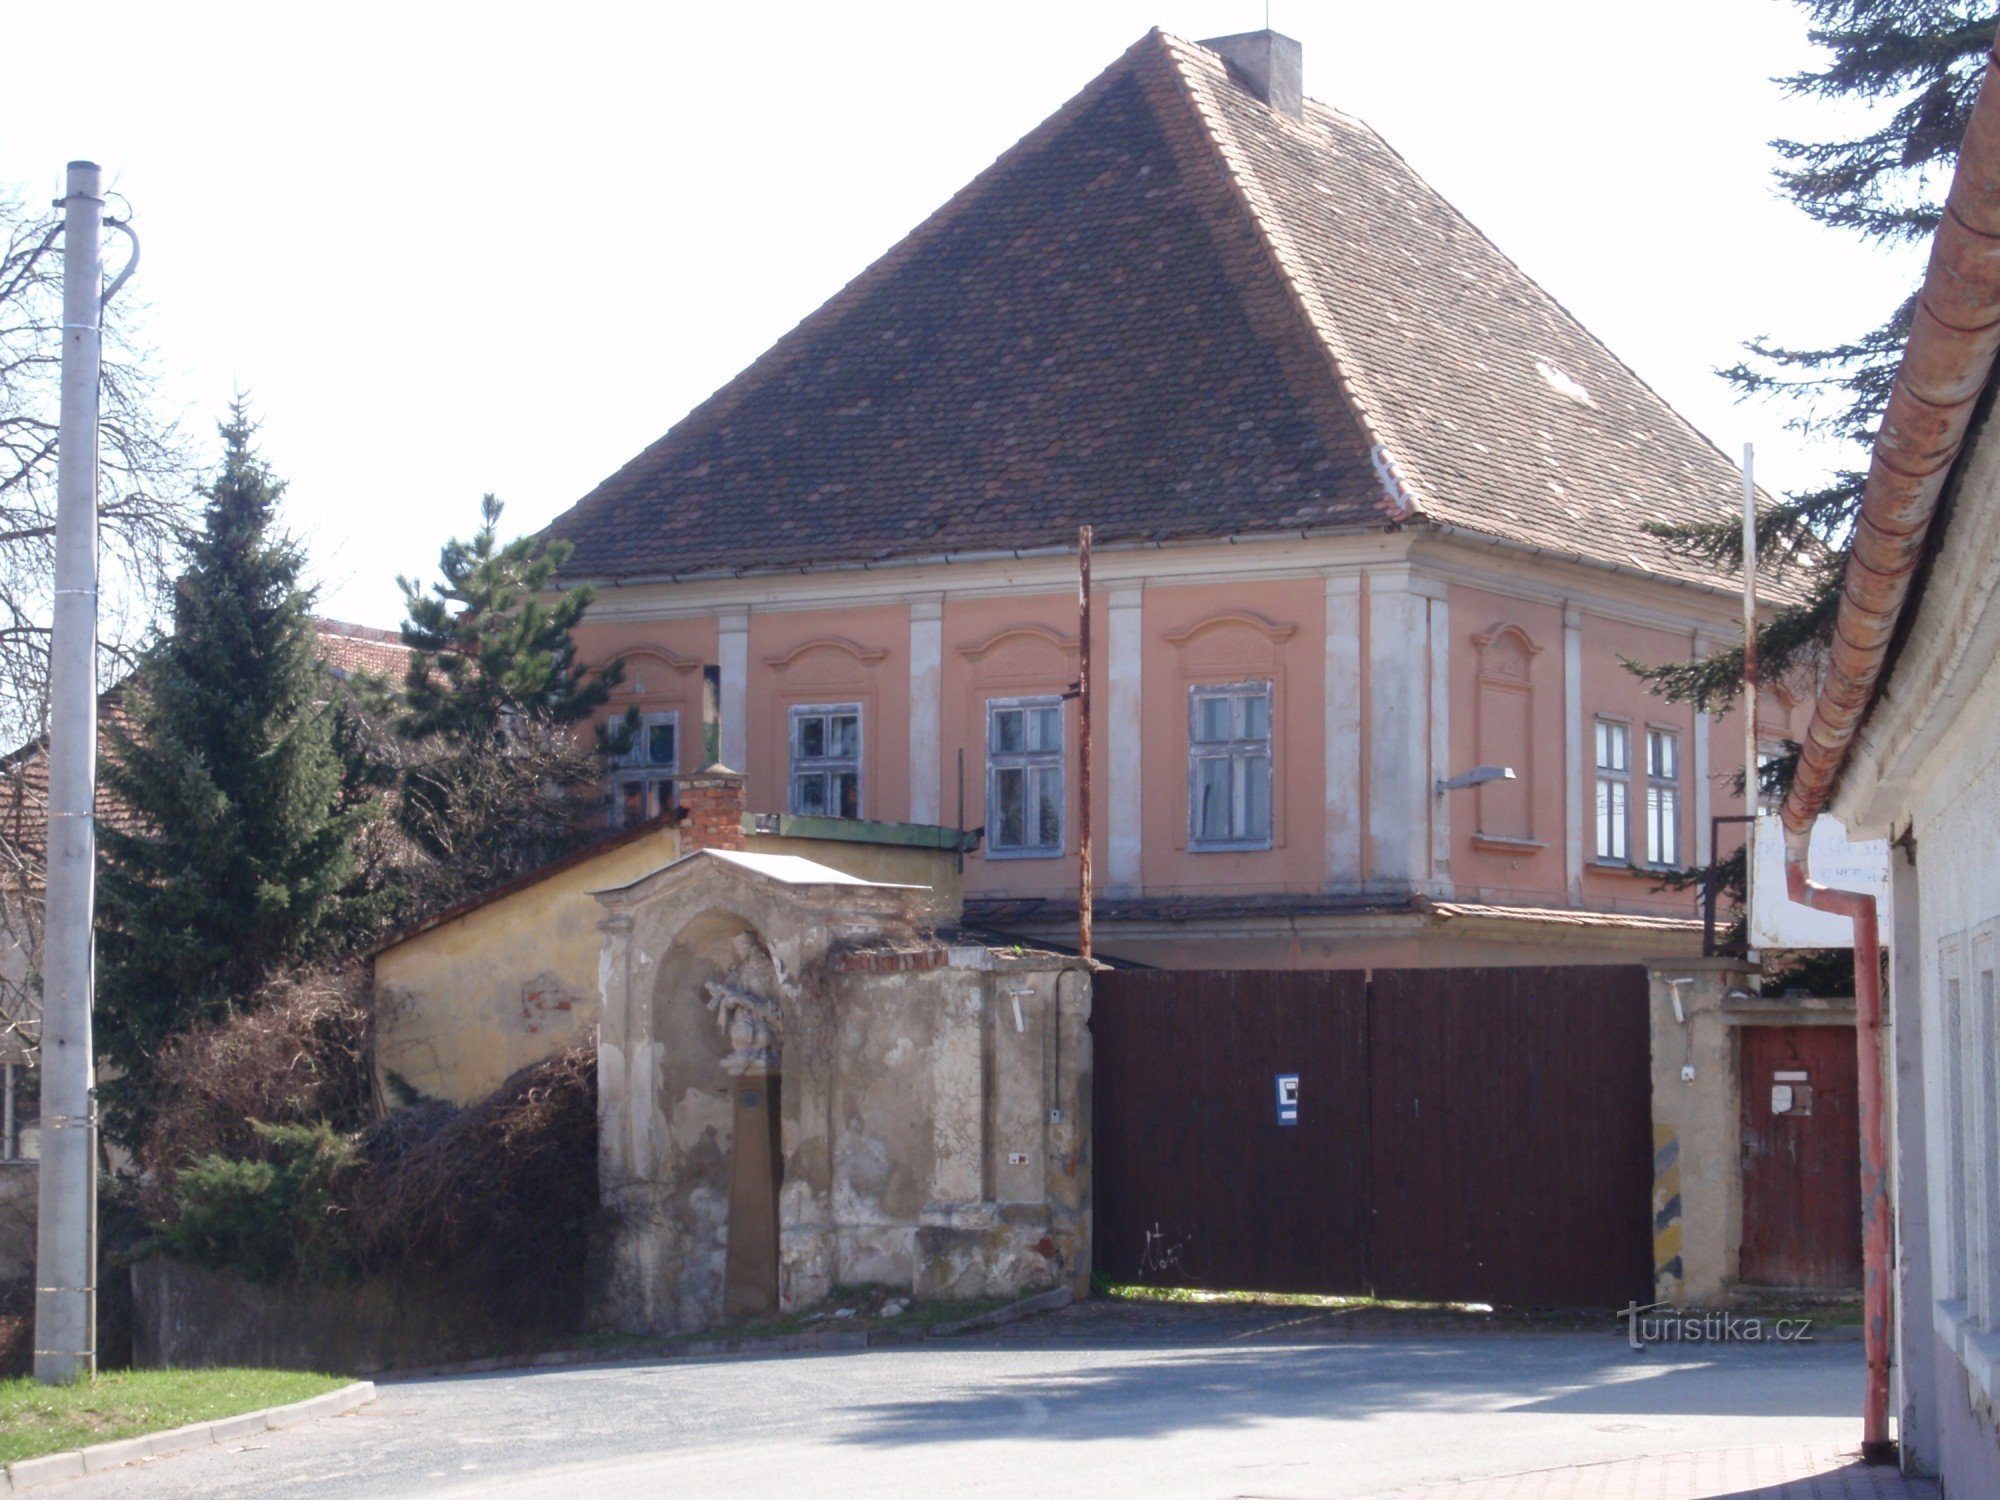 Castle in Brněnské Ivanovice